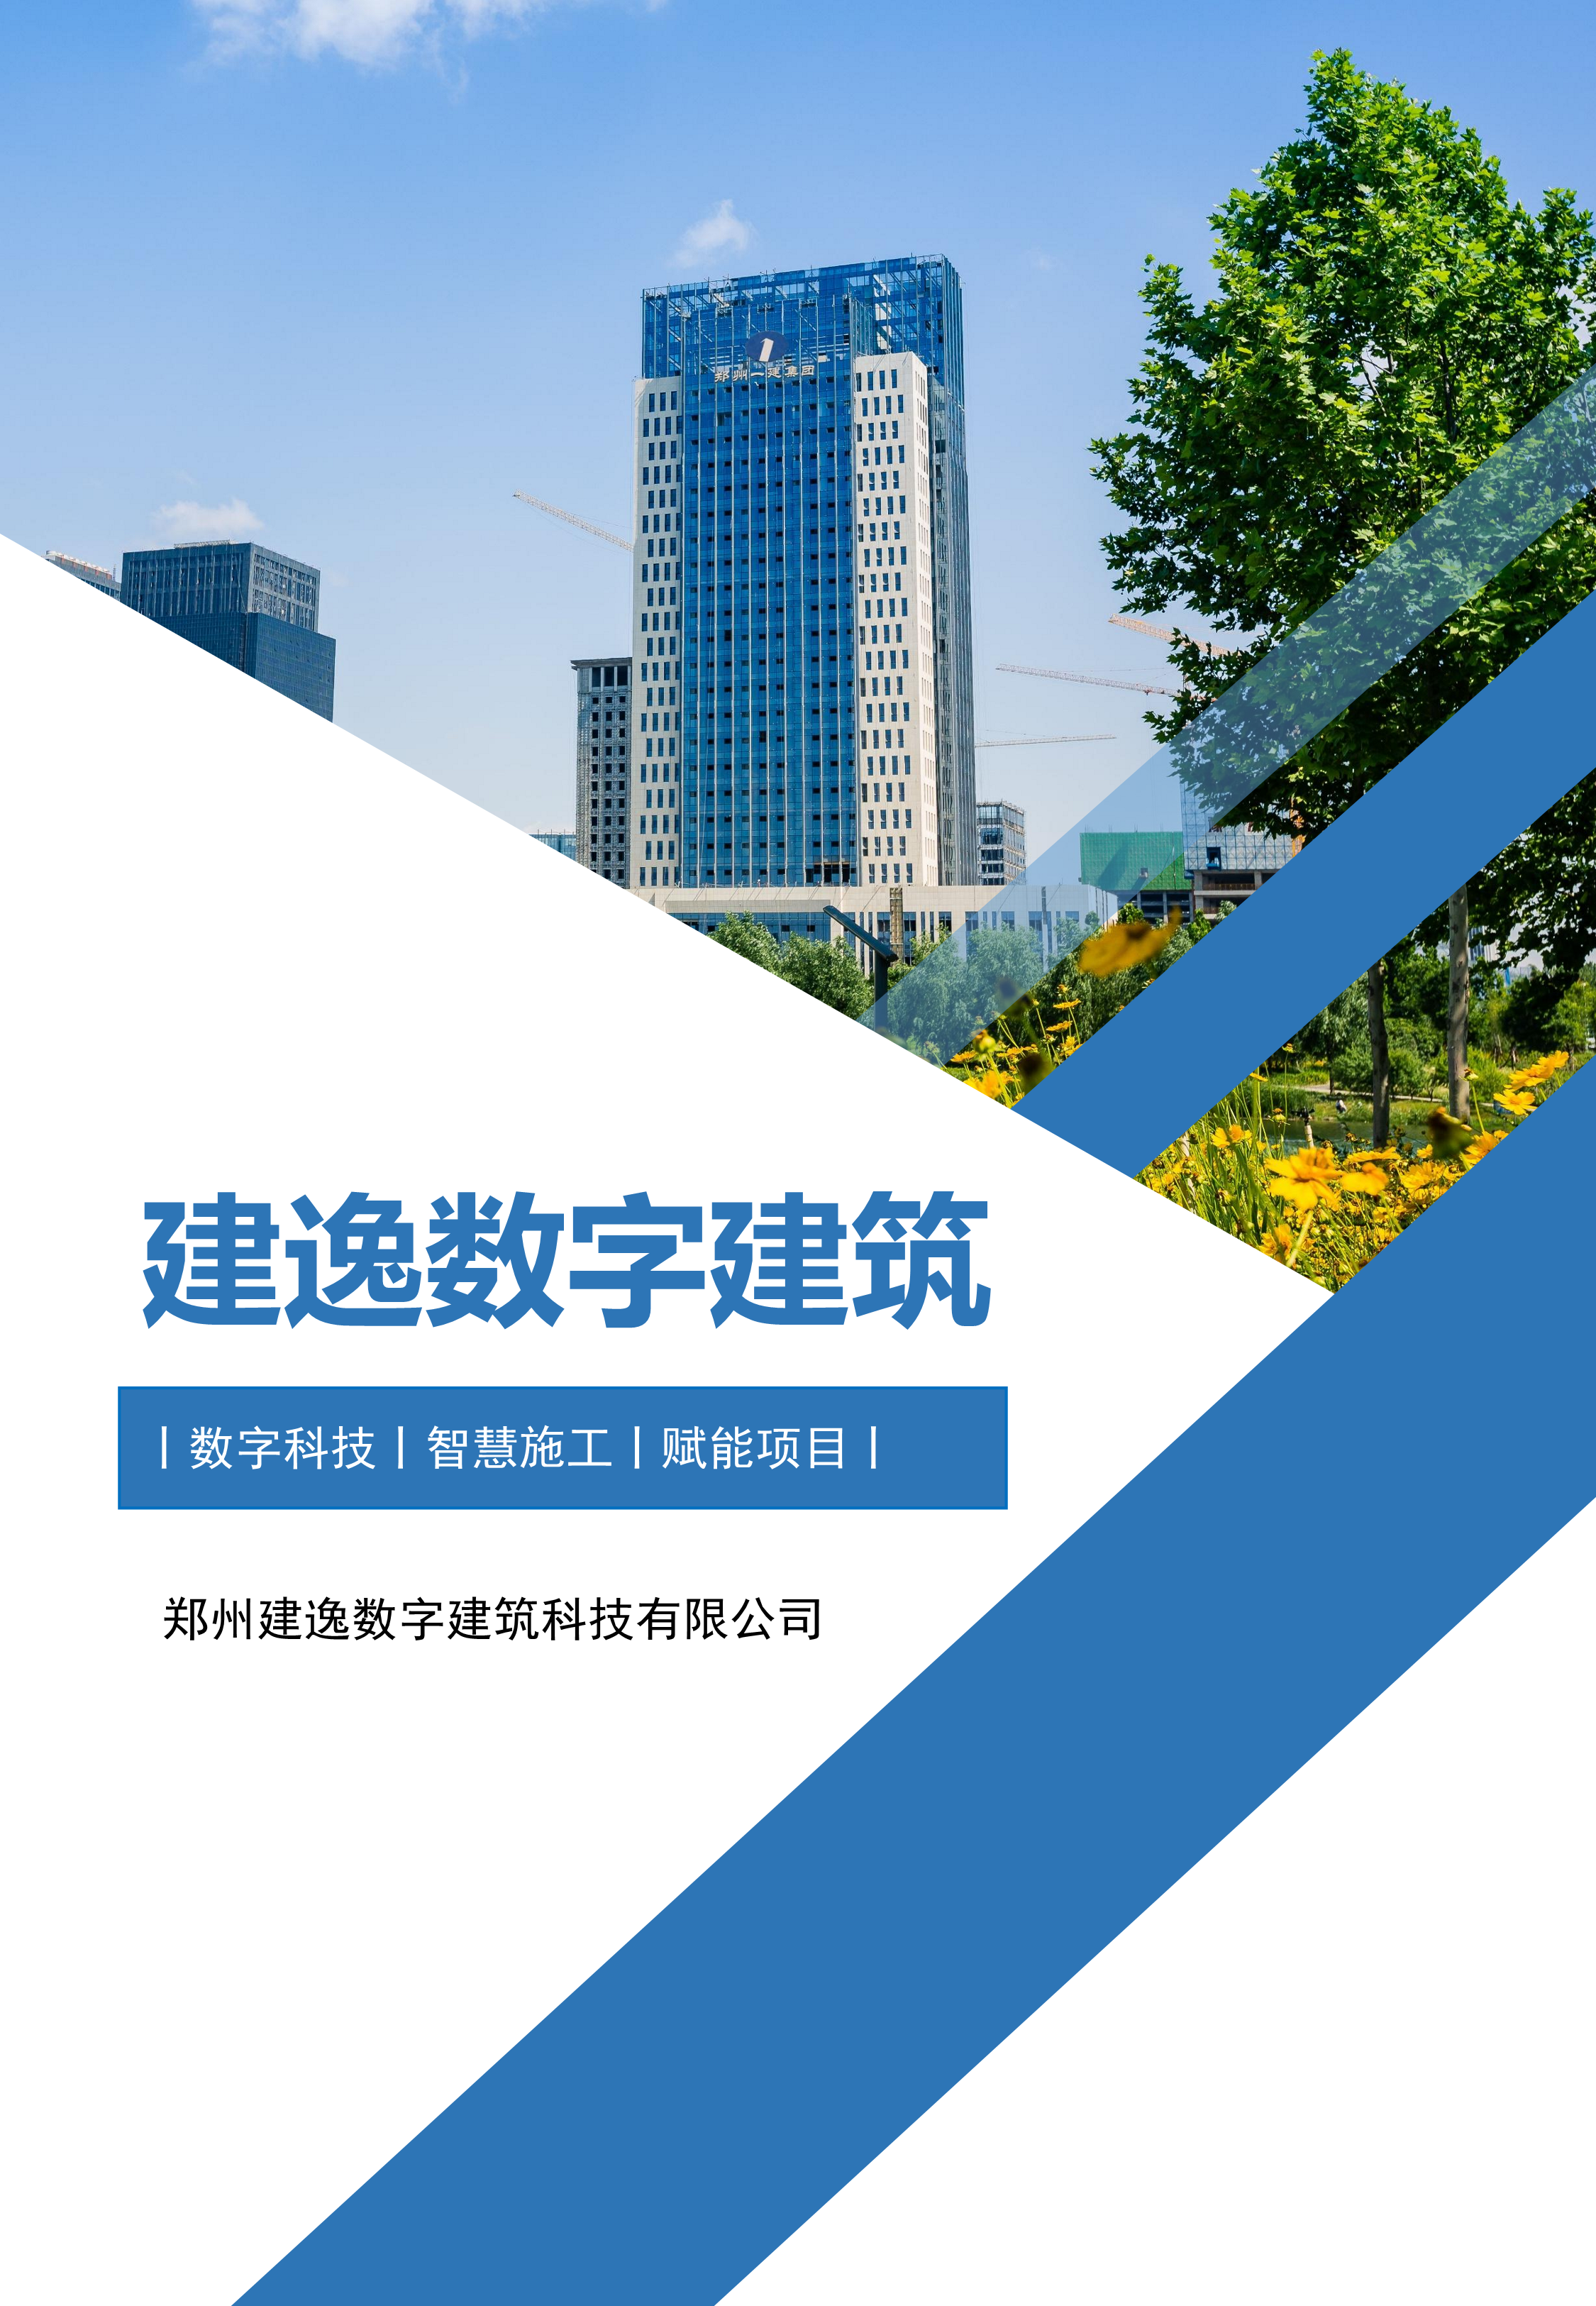 郑州建逸数字建筑科技有限公司